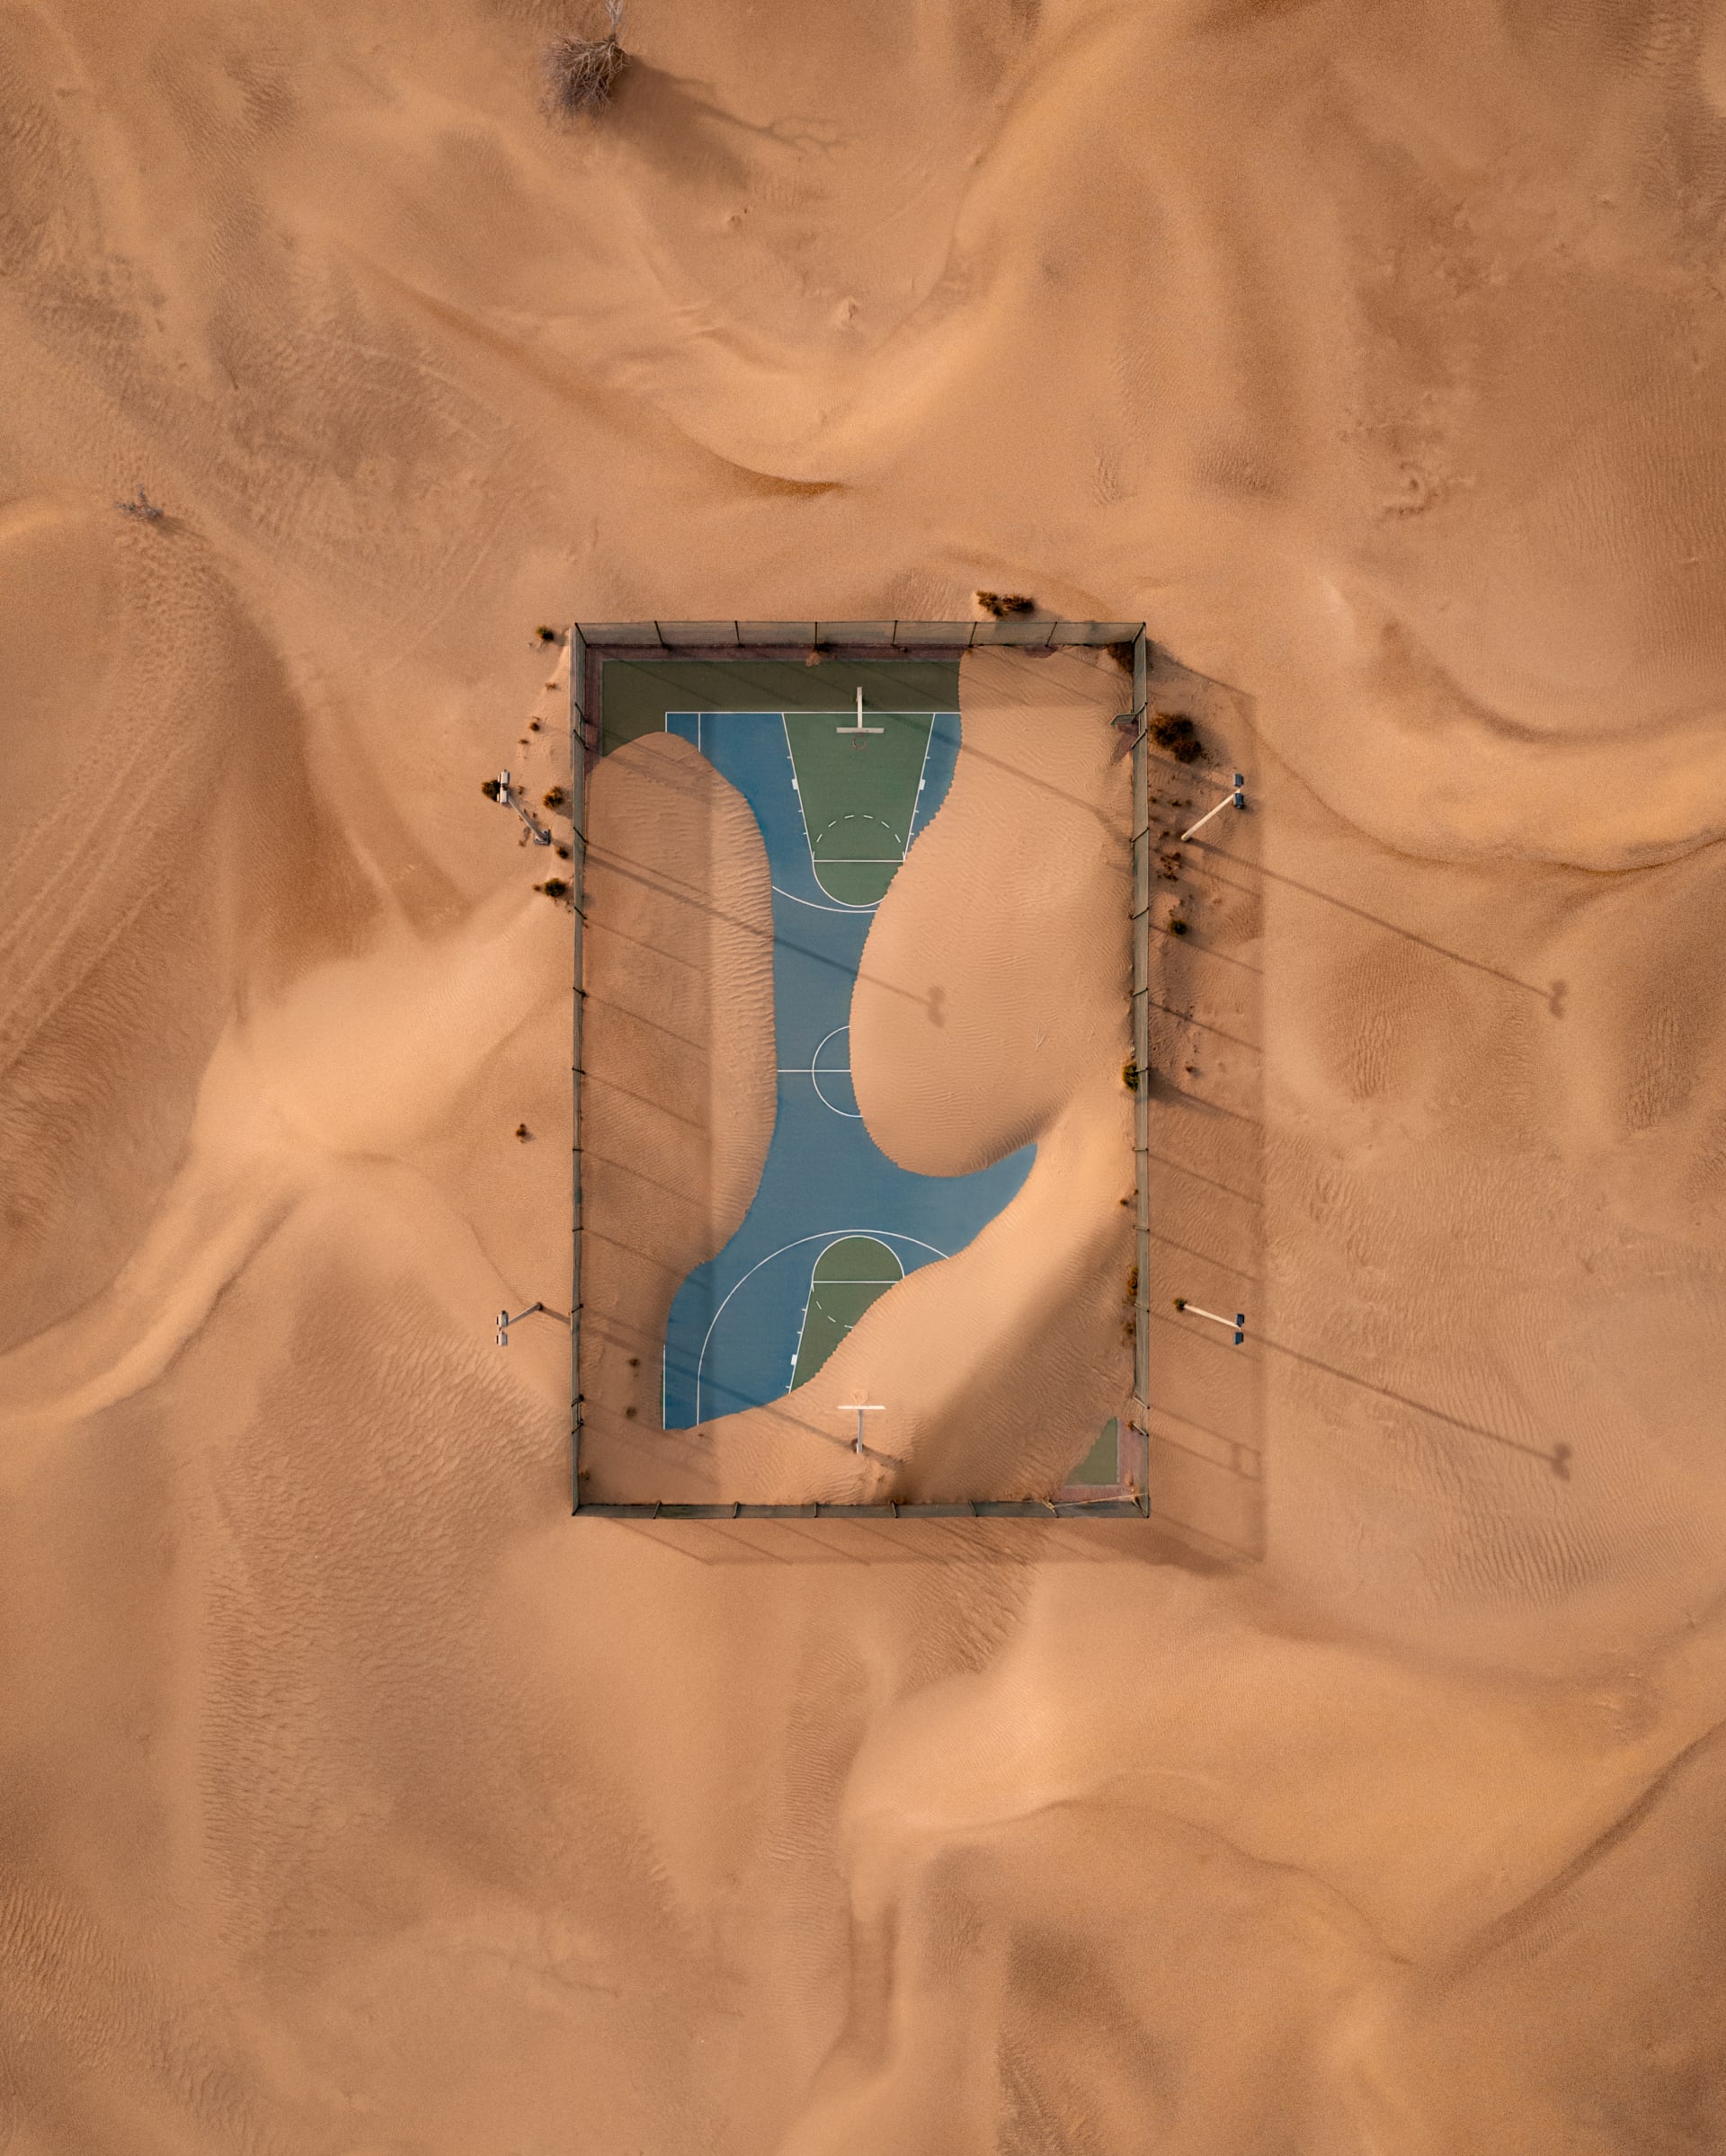 من زاوية فريدة.. مصور يوثق ملعب كرة سلة ابتلعه الرمال في الإمارات